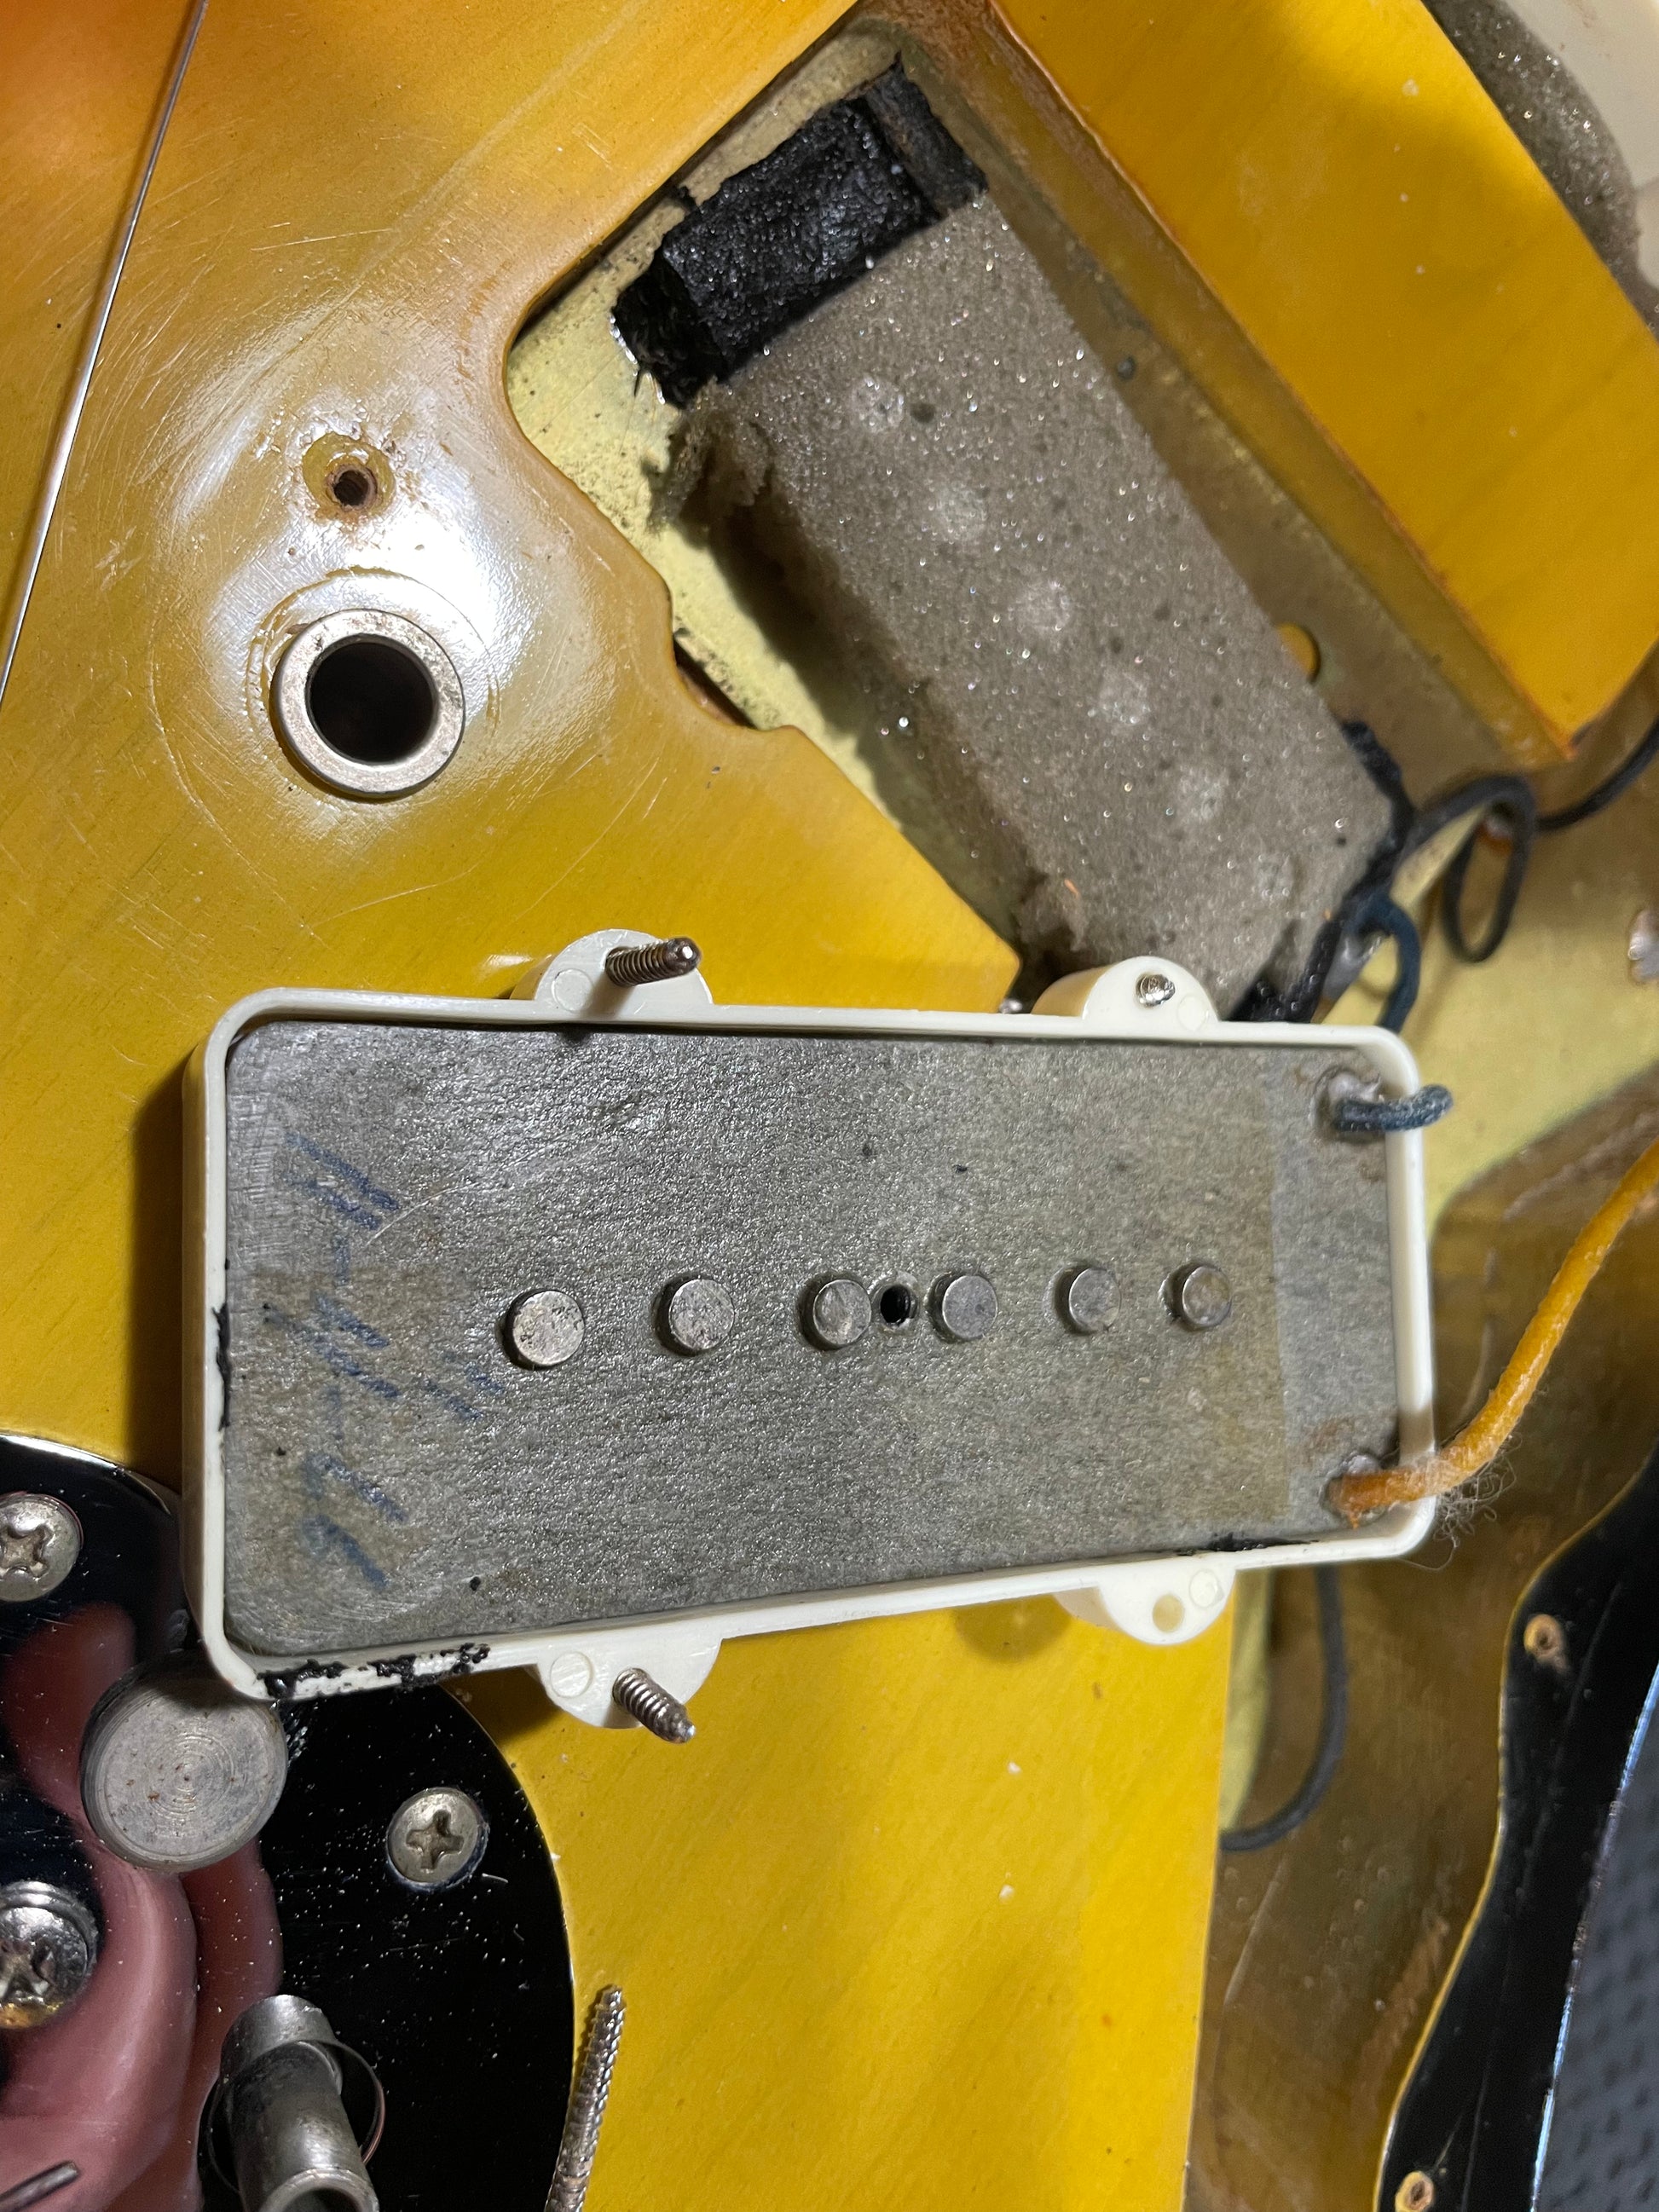 Fender Jazzmaster 1966 - 3-Color Sunburst Guitar #9922 PRE-OWNED - Danville Music